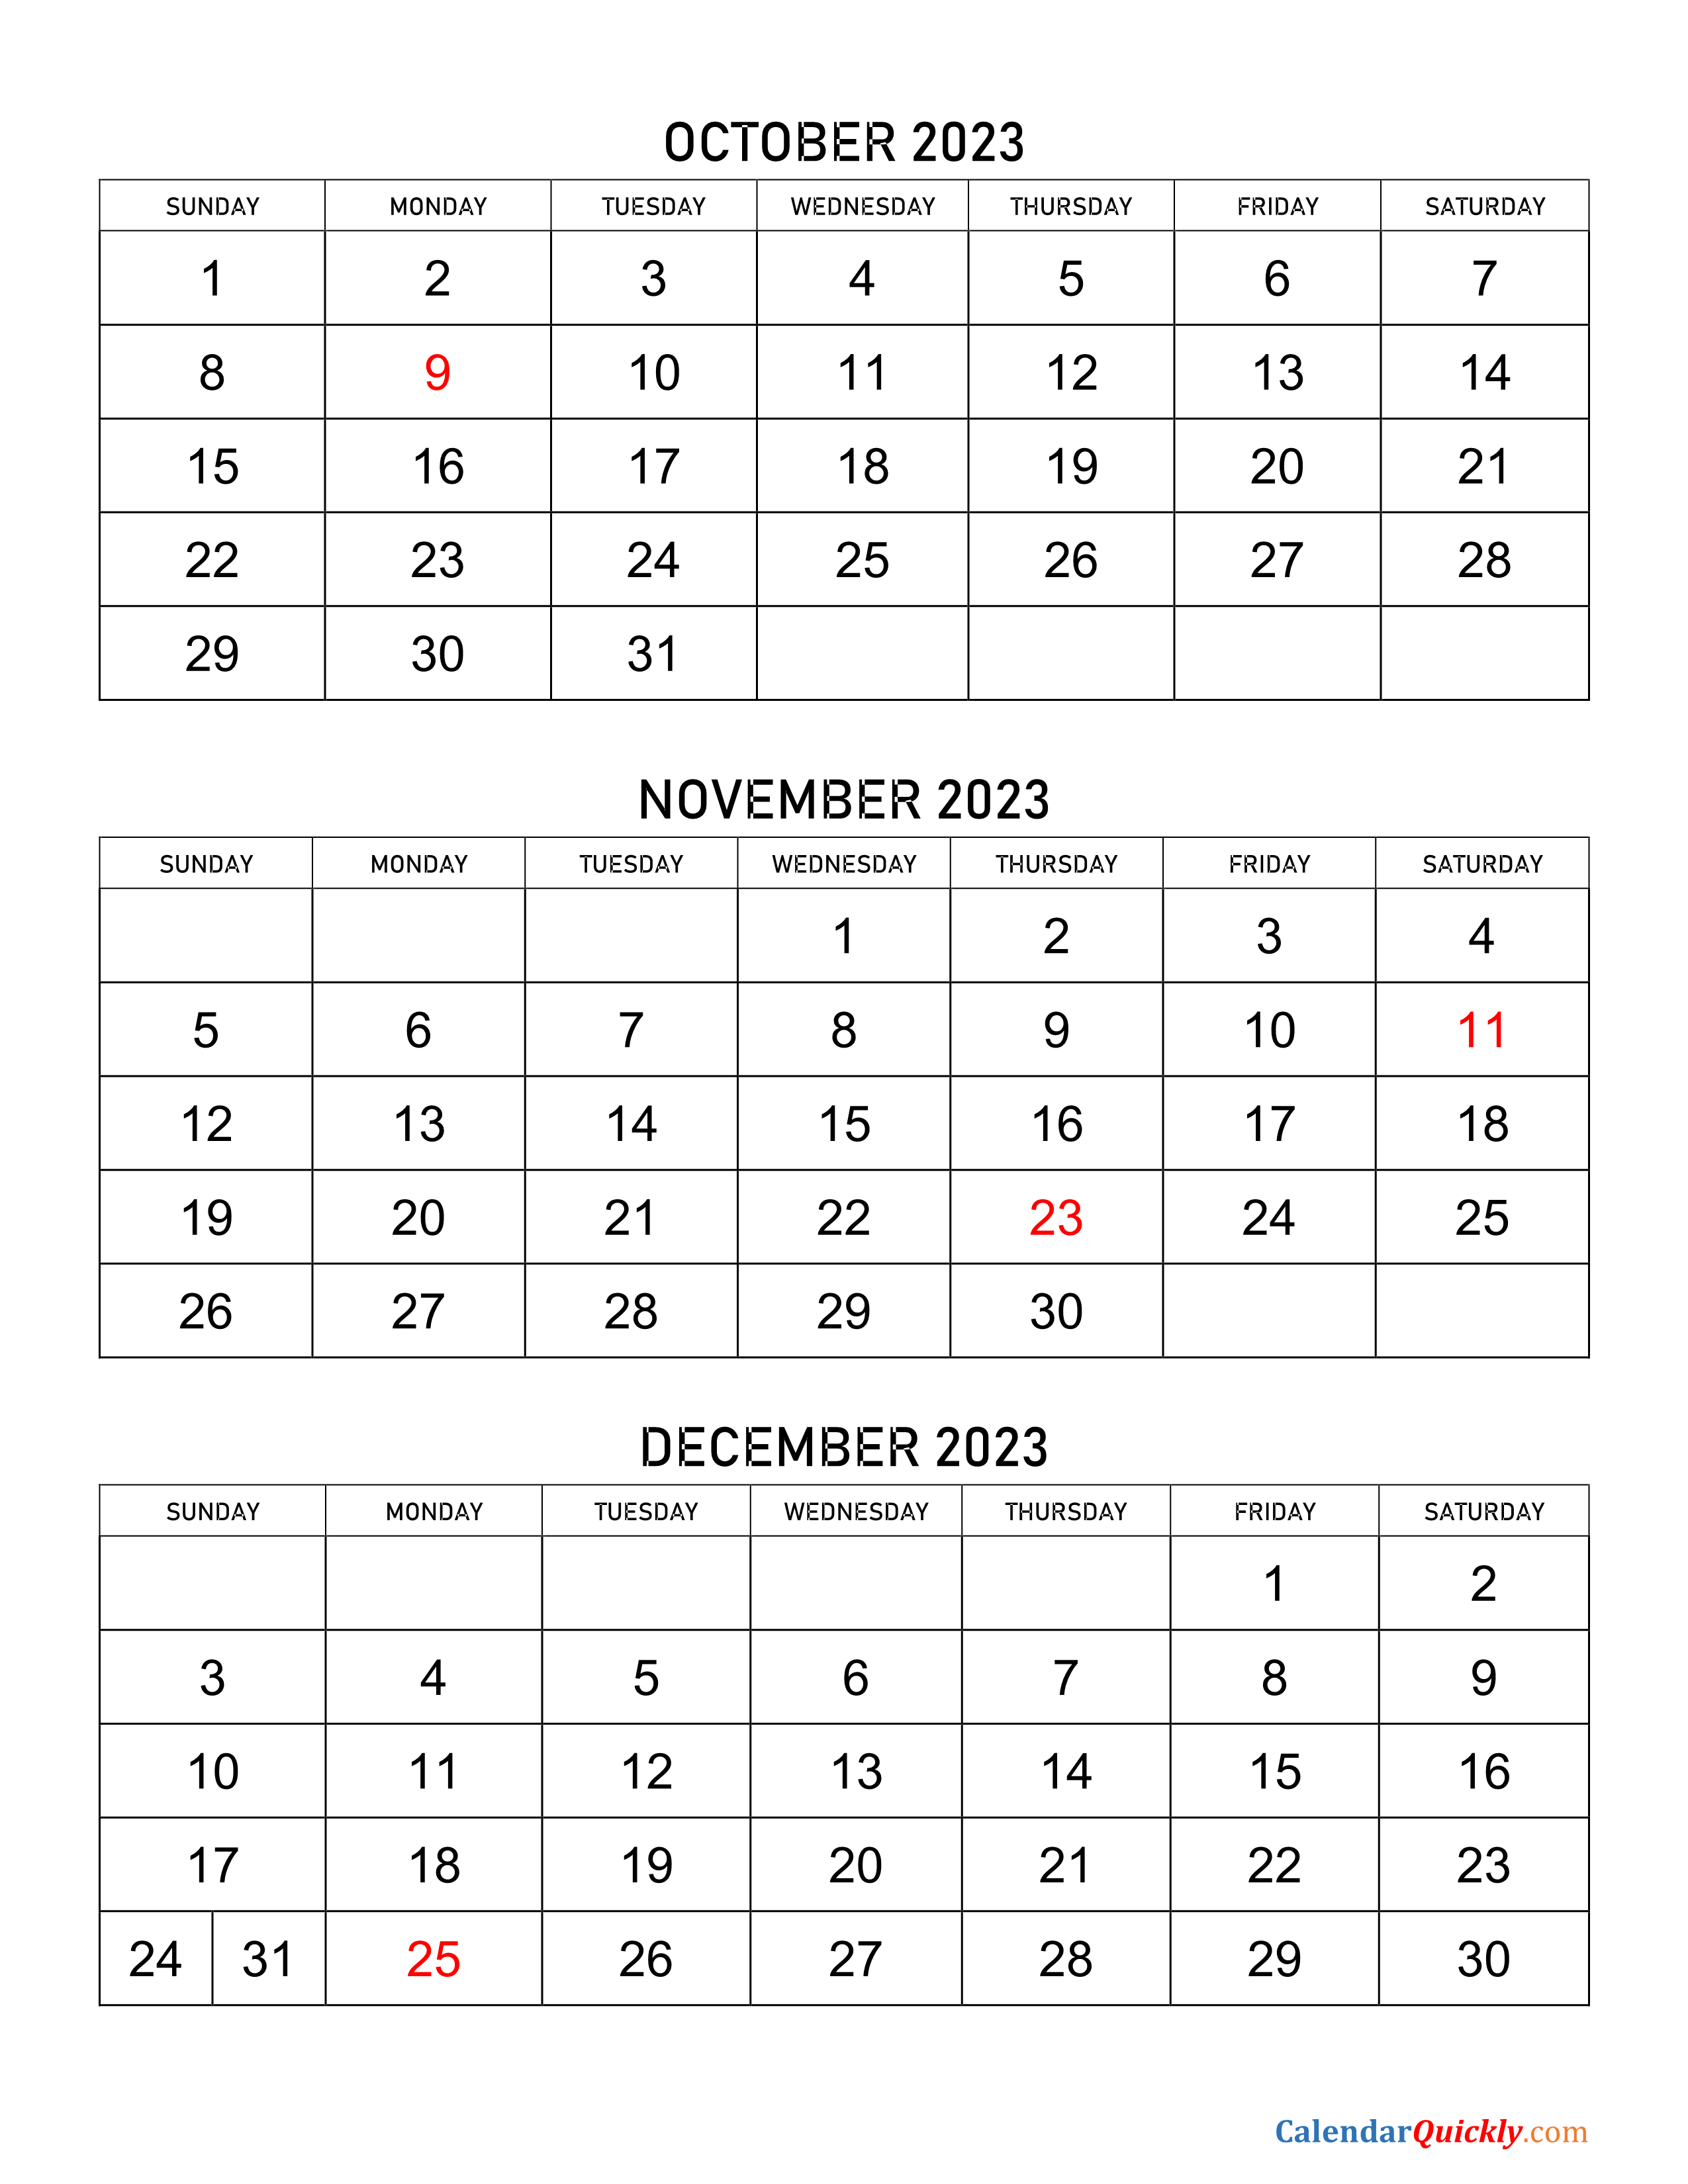 october-to-december-2023-calendar-calendar-quickly